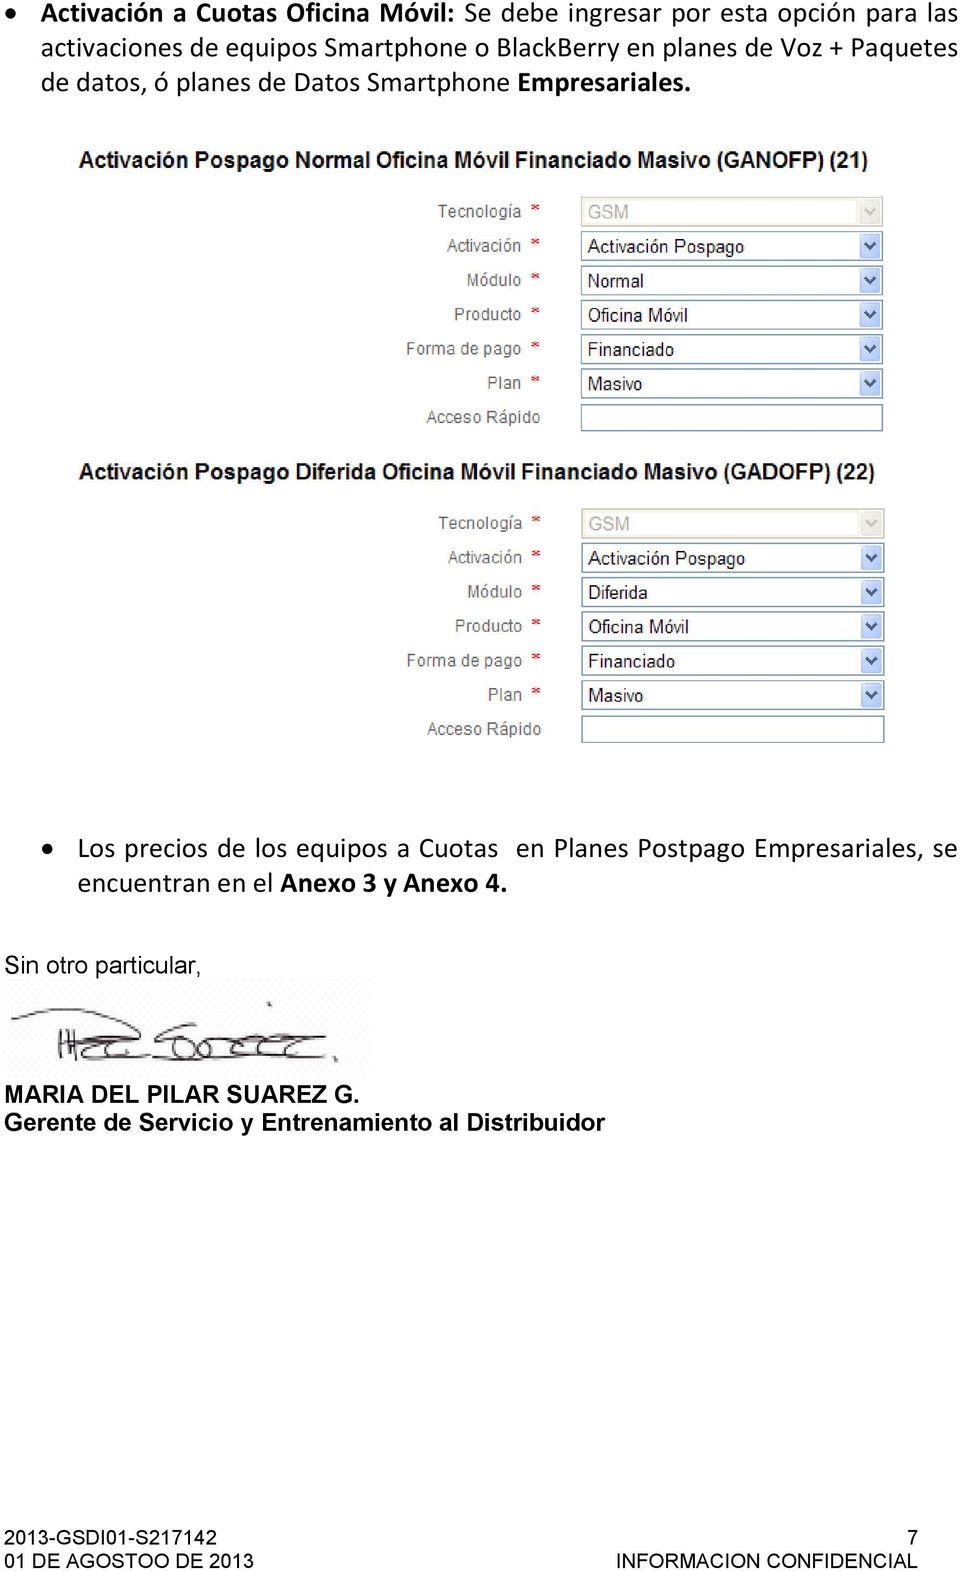 Los precios de los equipos a Cuotas en Planes Postpago Empresariales, se encuentran en el Anexo 3 y Anexo 4.